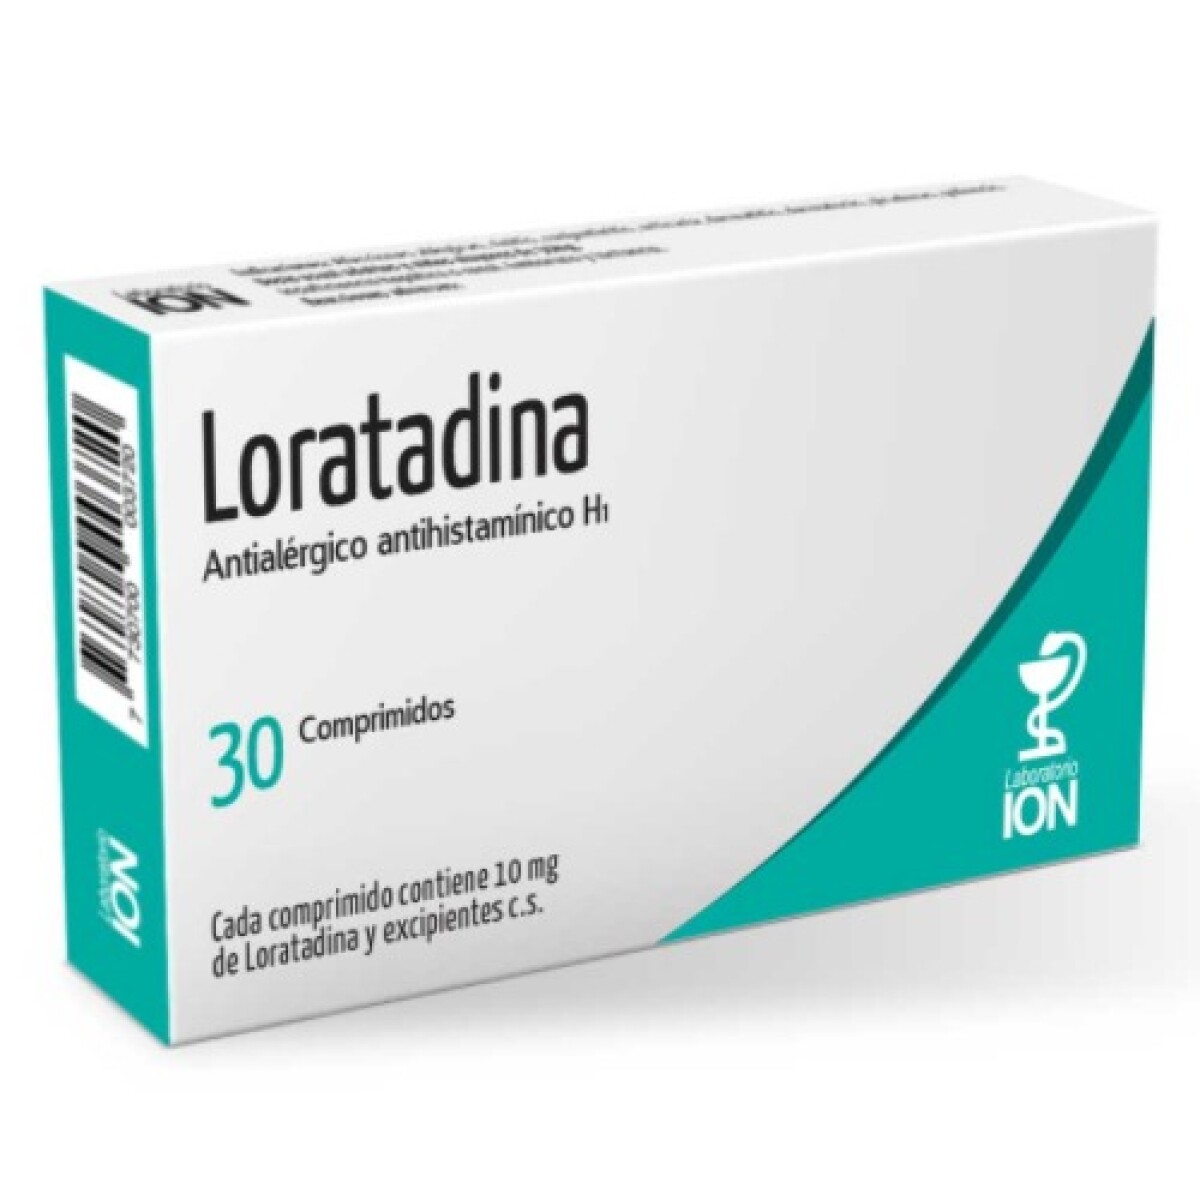 Loratadina ION 3O comprimidos 